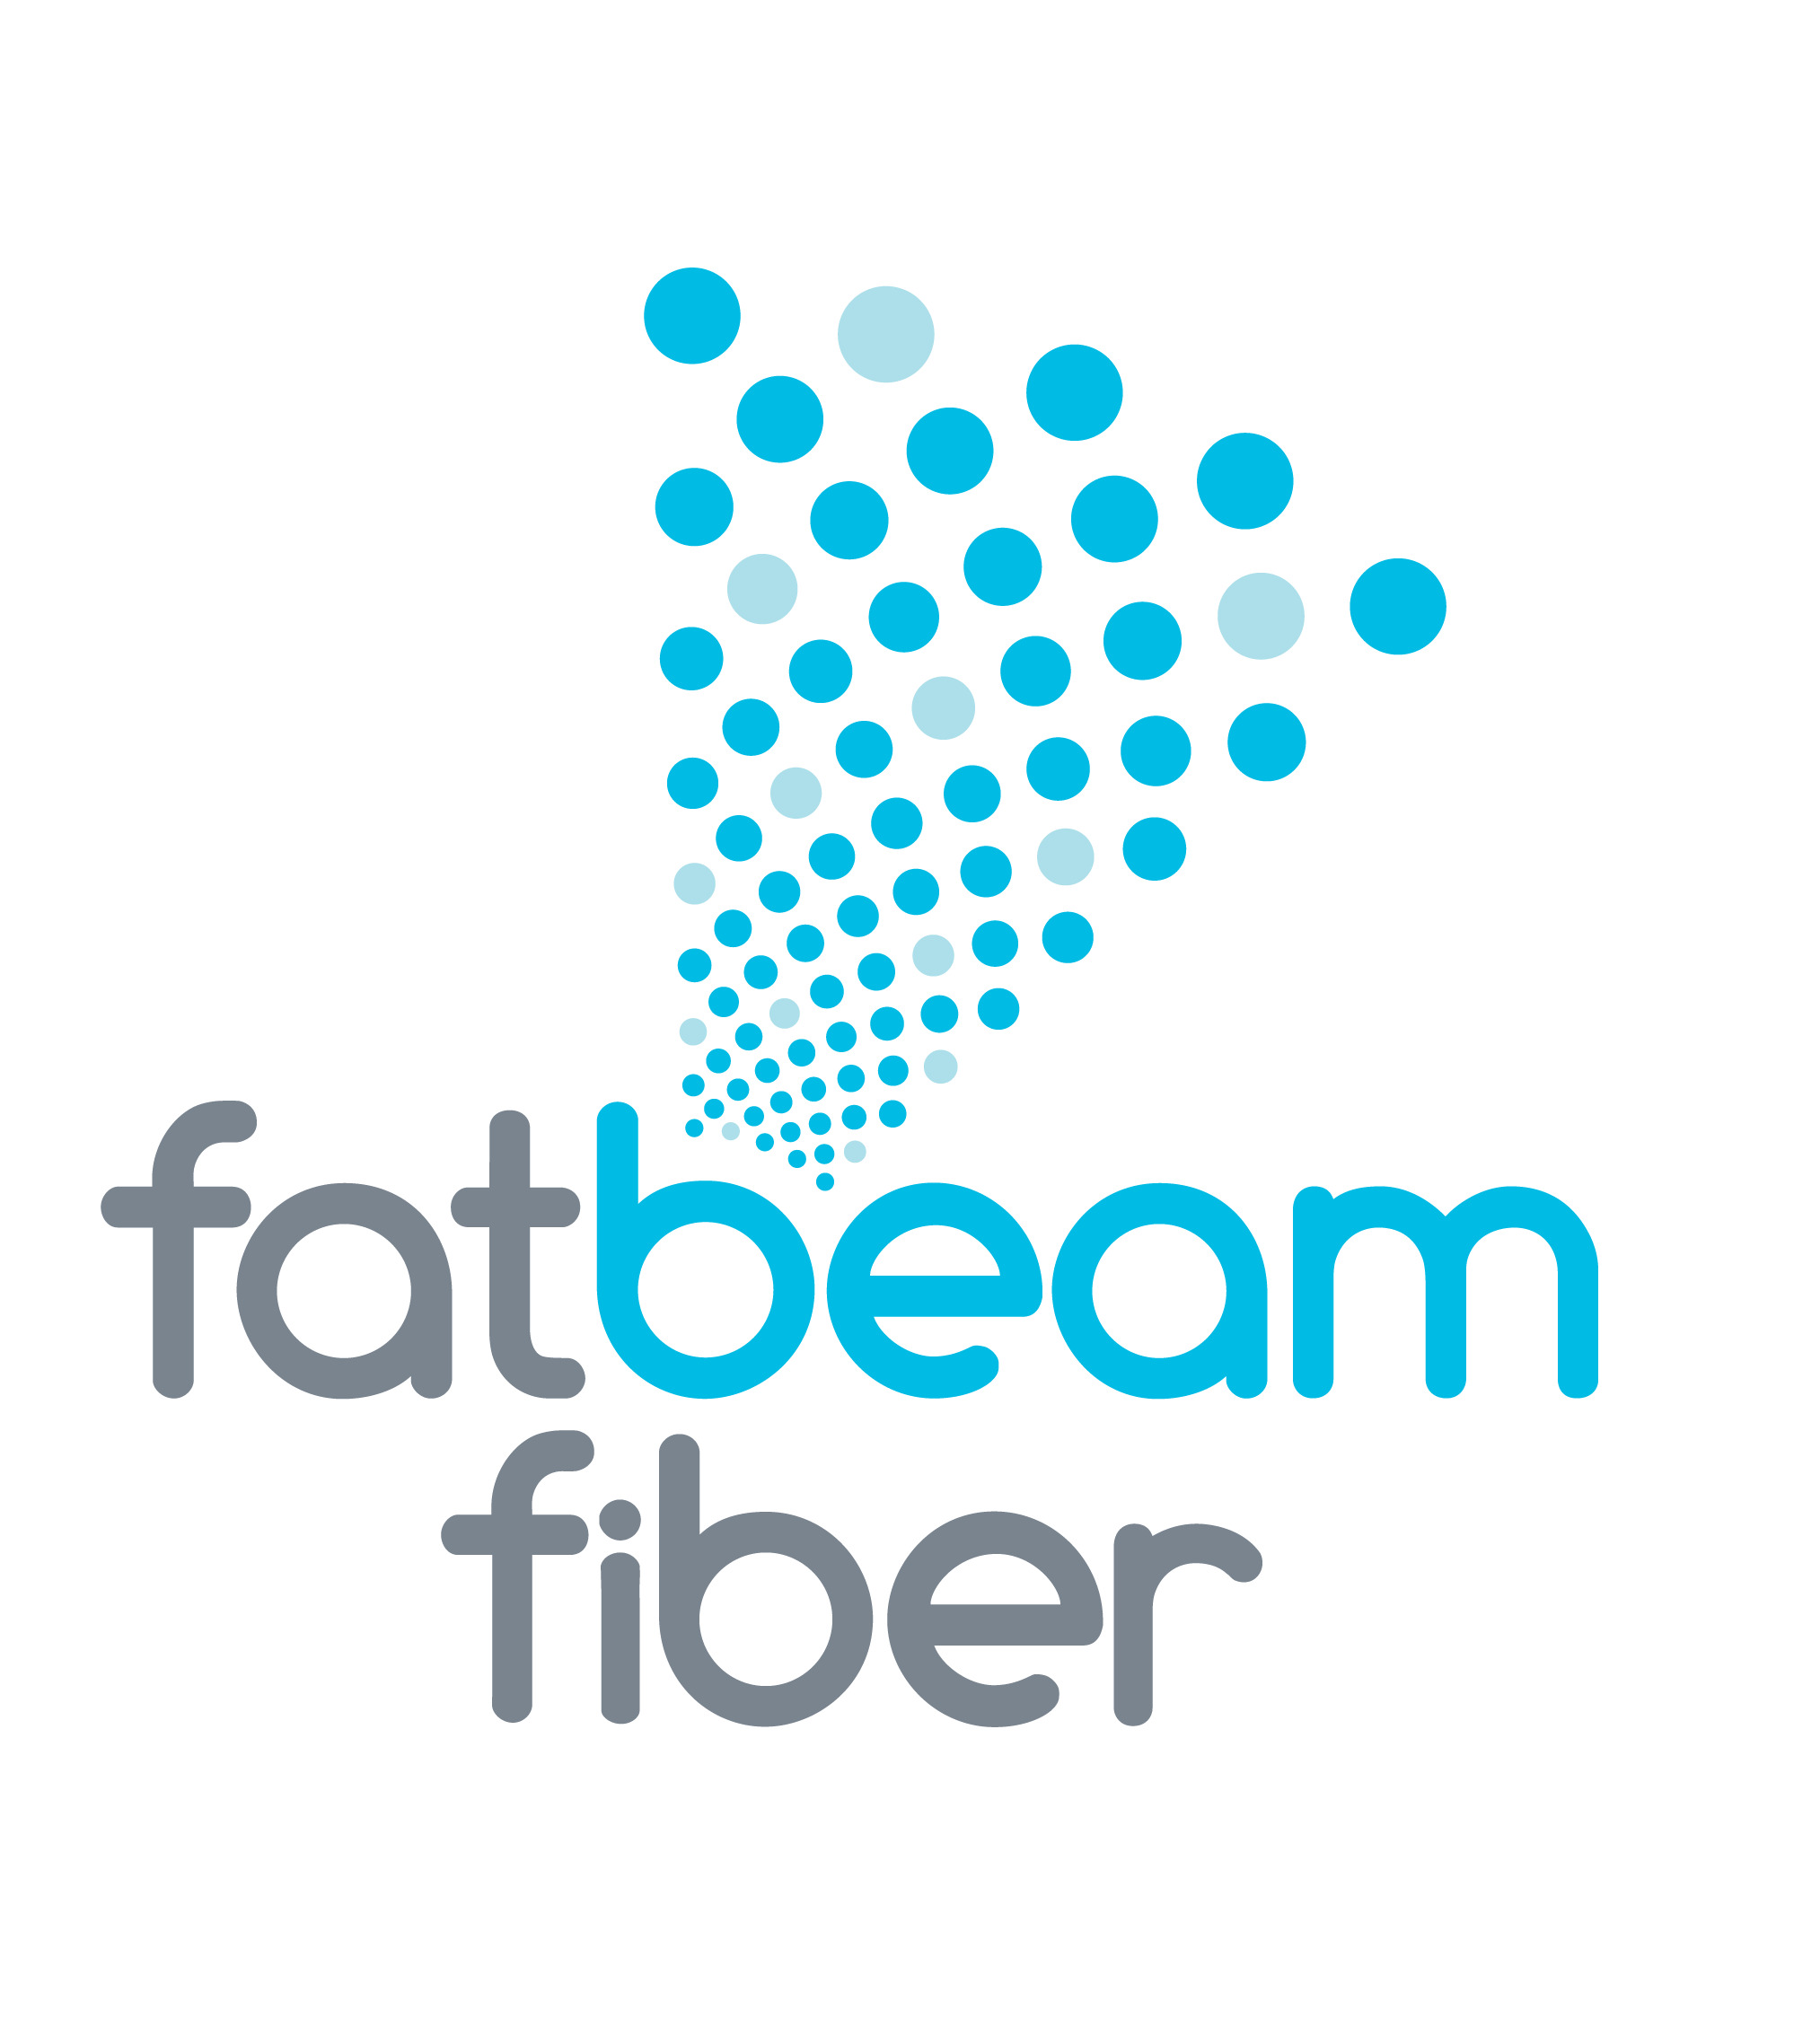 Fatbeam Fiber